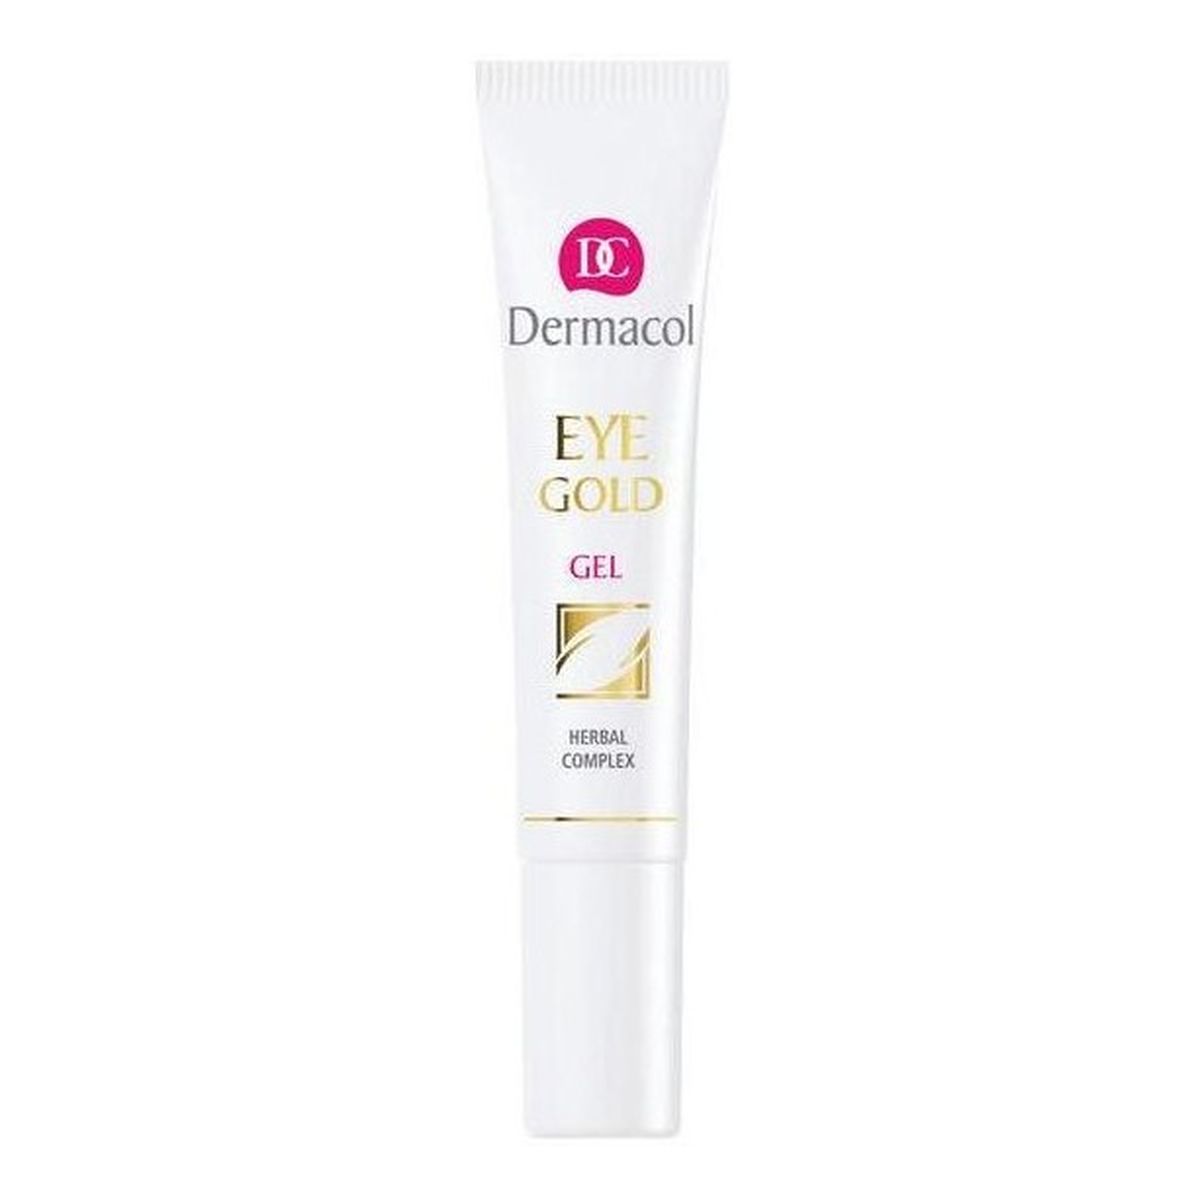 Dermacol Refreshing Eye Gold Odświeżający żel redukujący cienie pod oczami 15ml